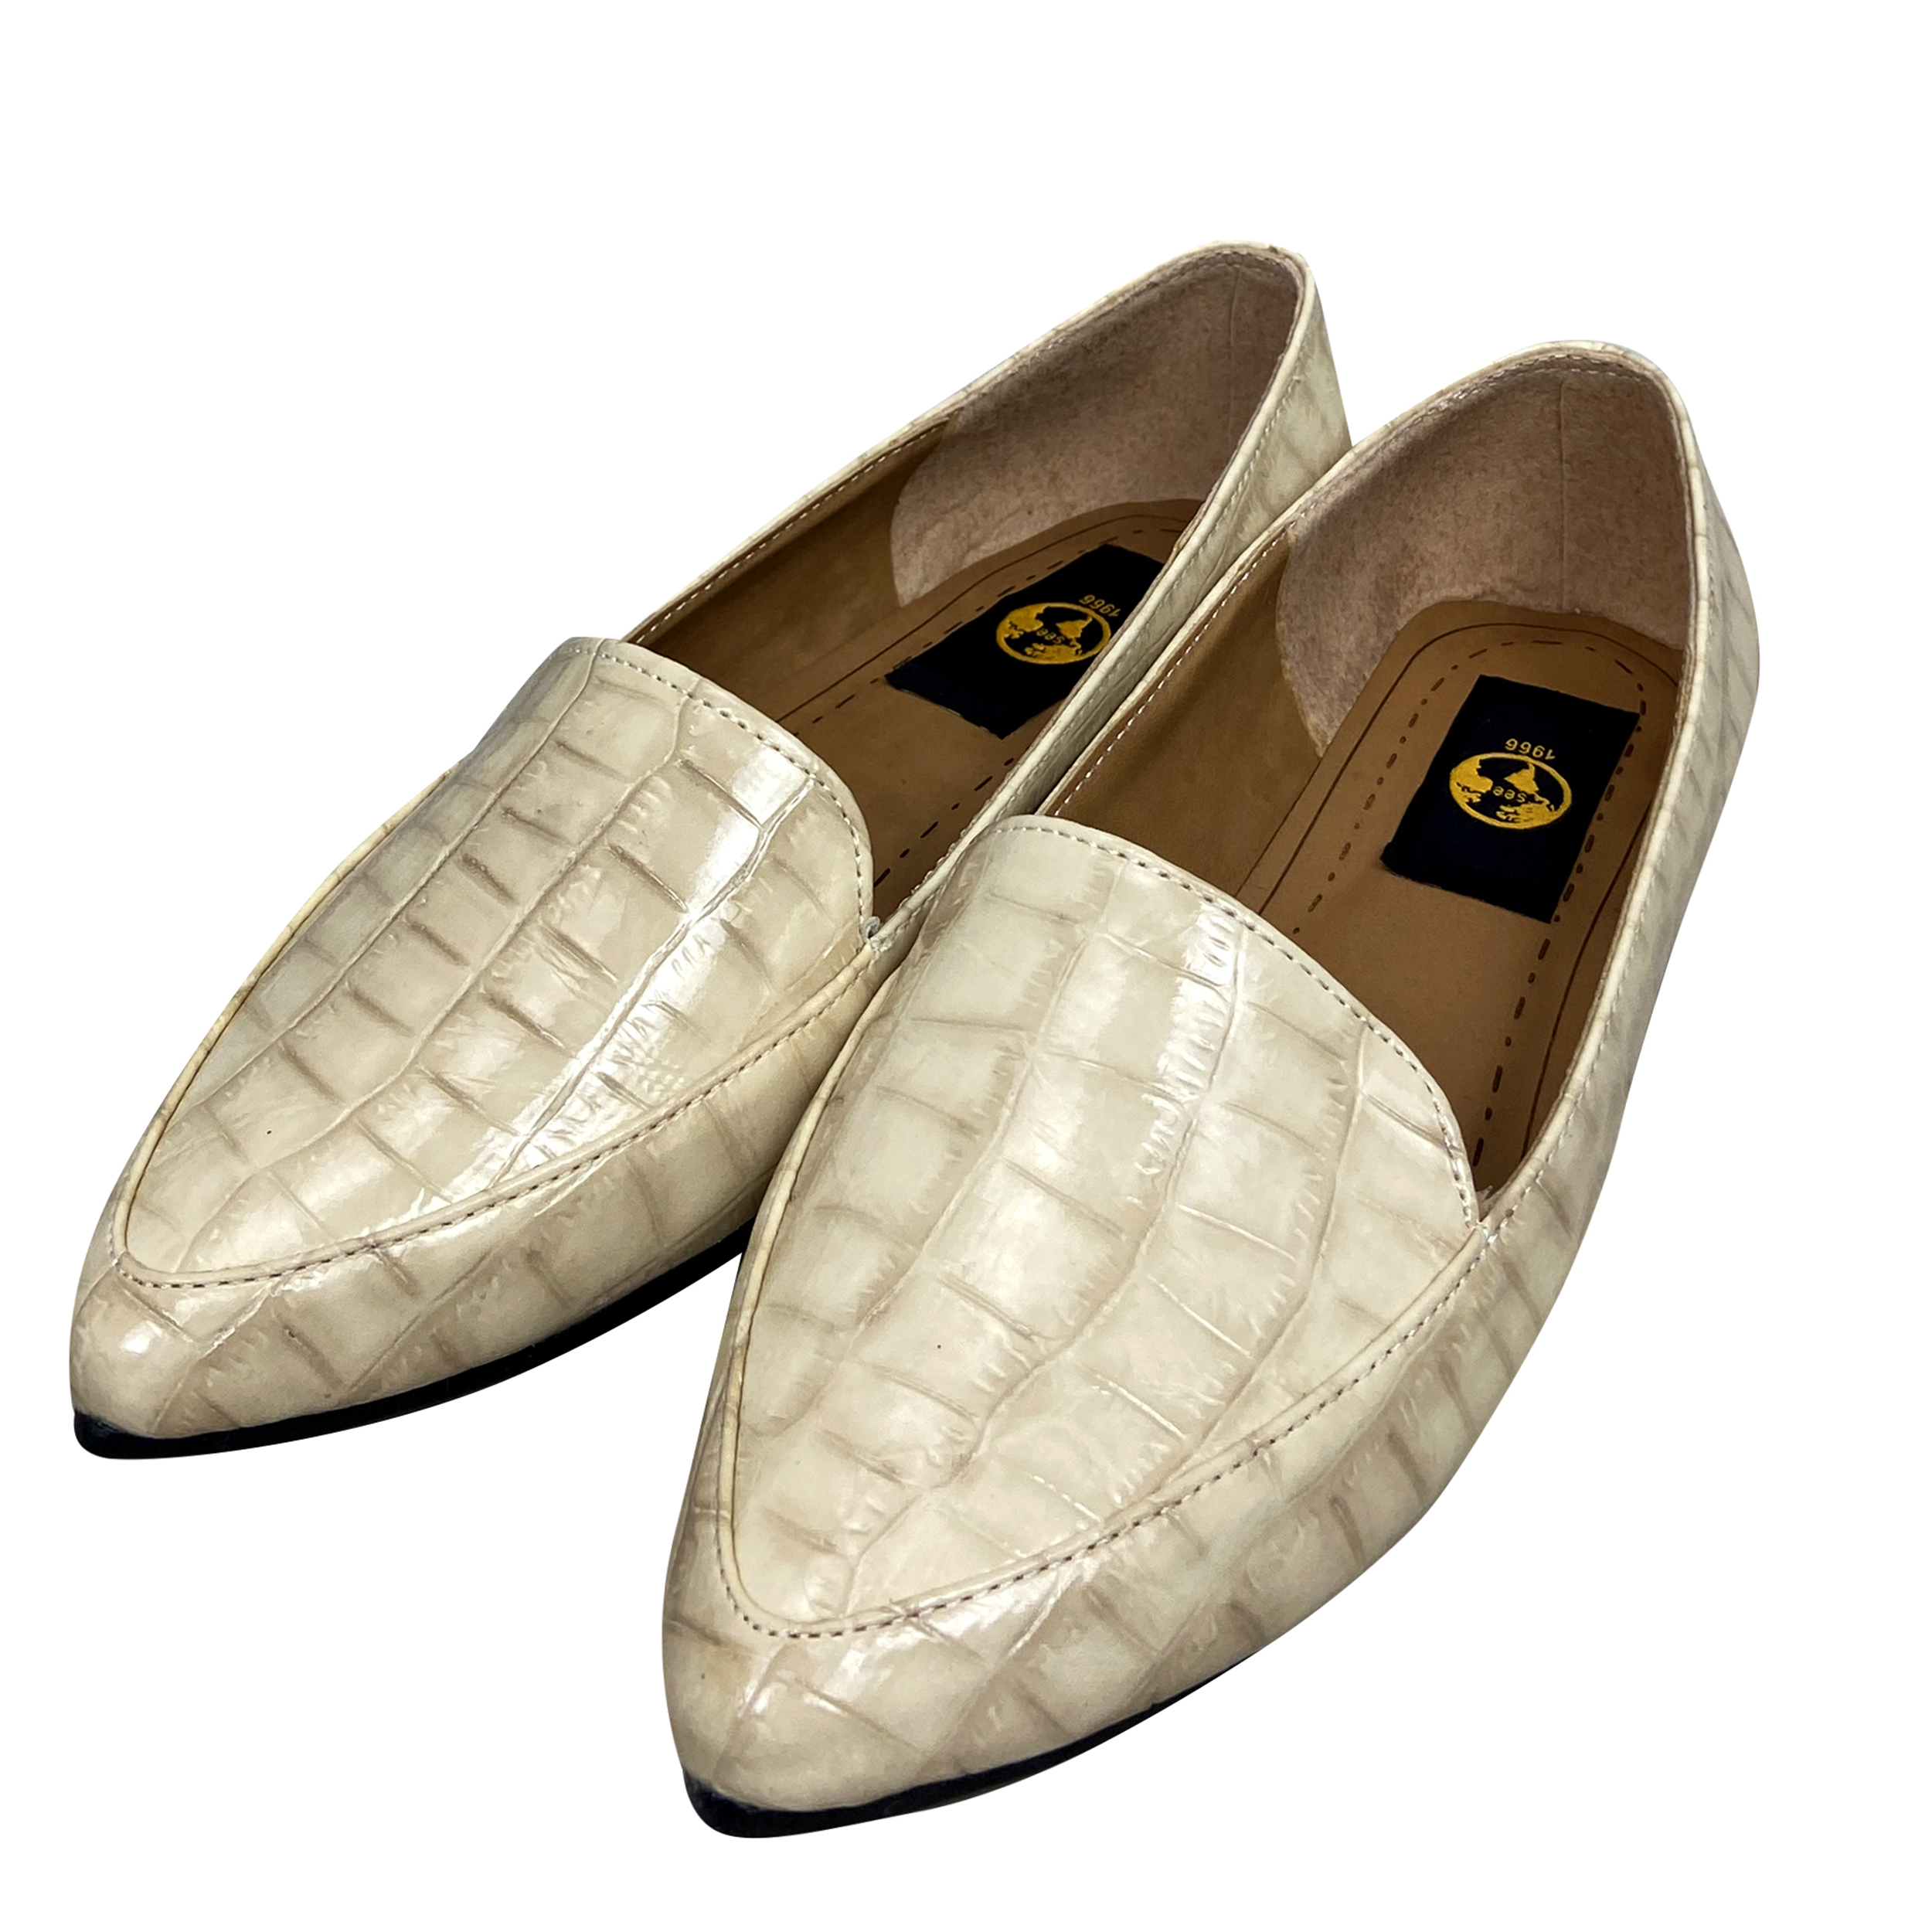 کفش زنانه سیی مدل ملکه پوست ماری کد 1961 -  - 2